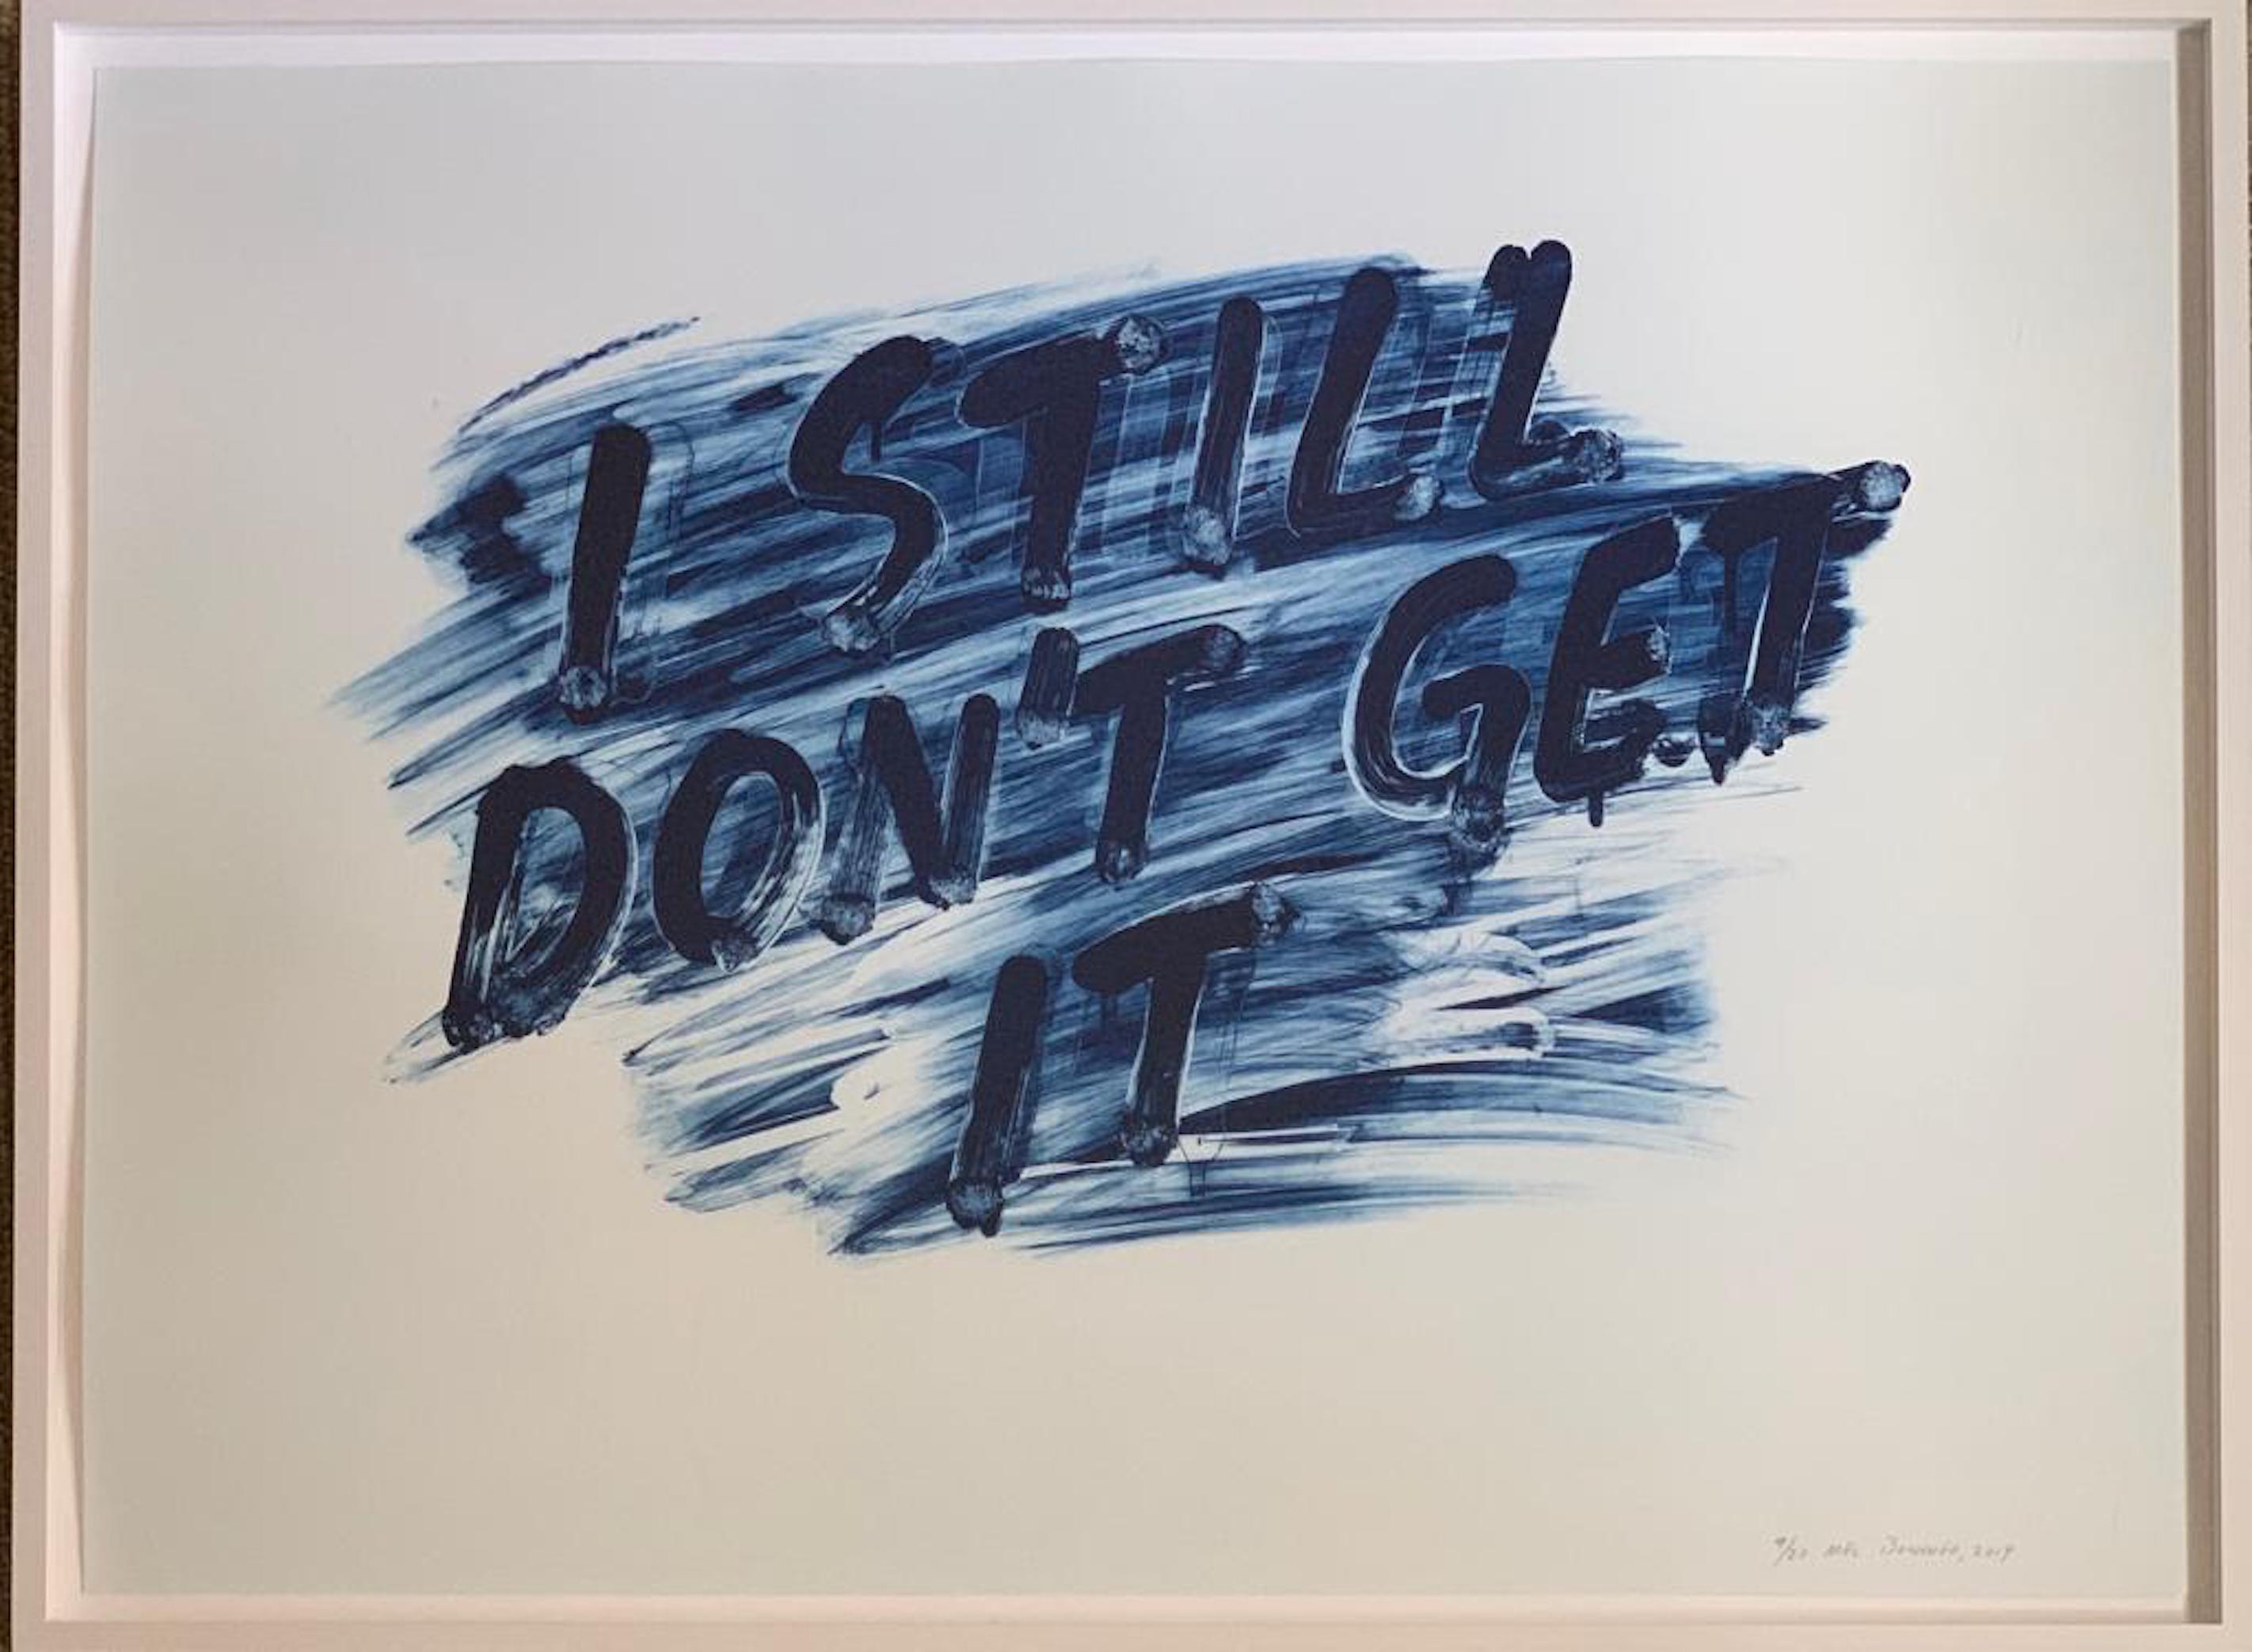 I Don't Get It / I Still Don't Get It - Contemporary Print by Mel Bochner